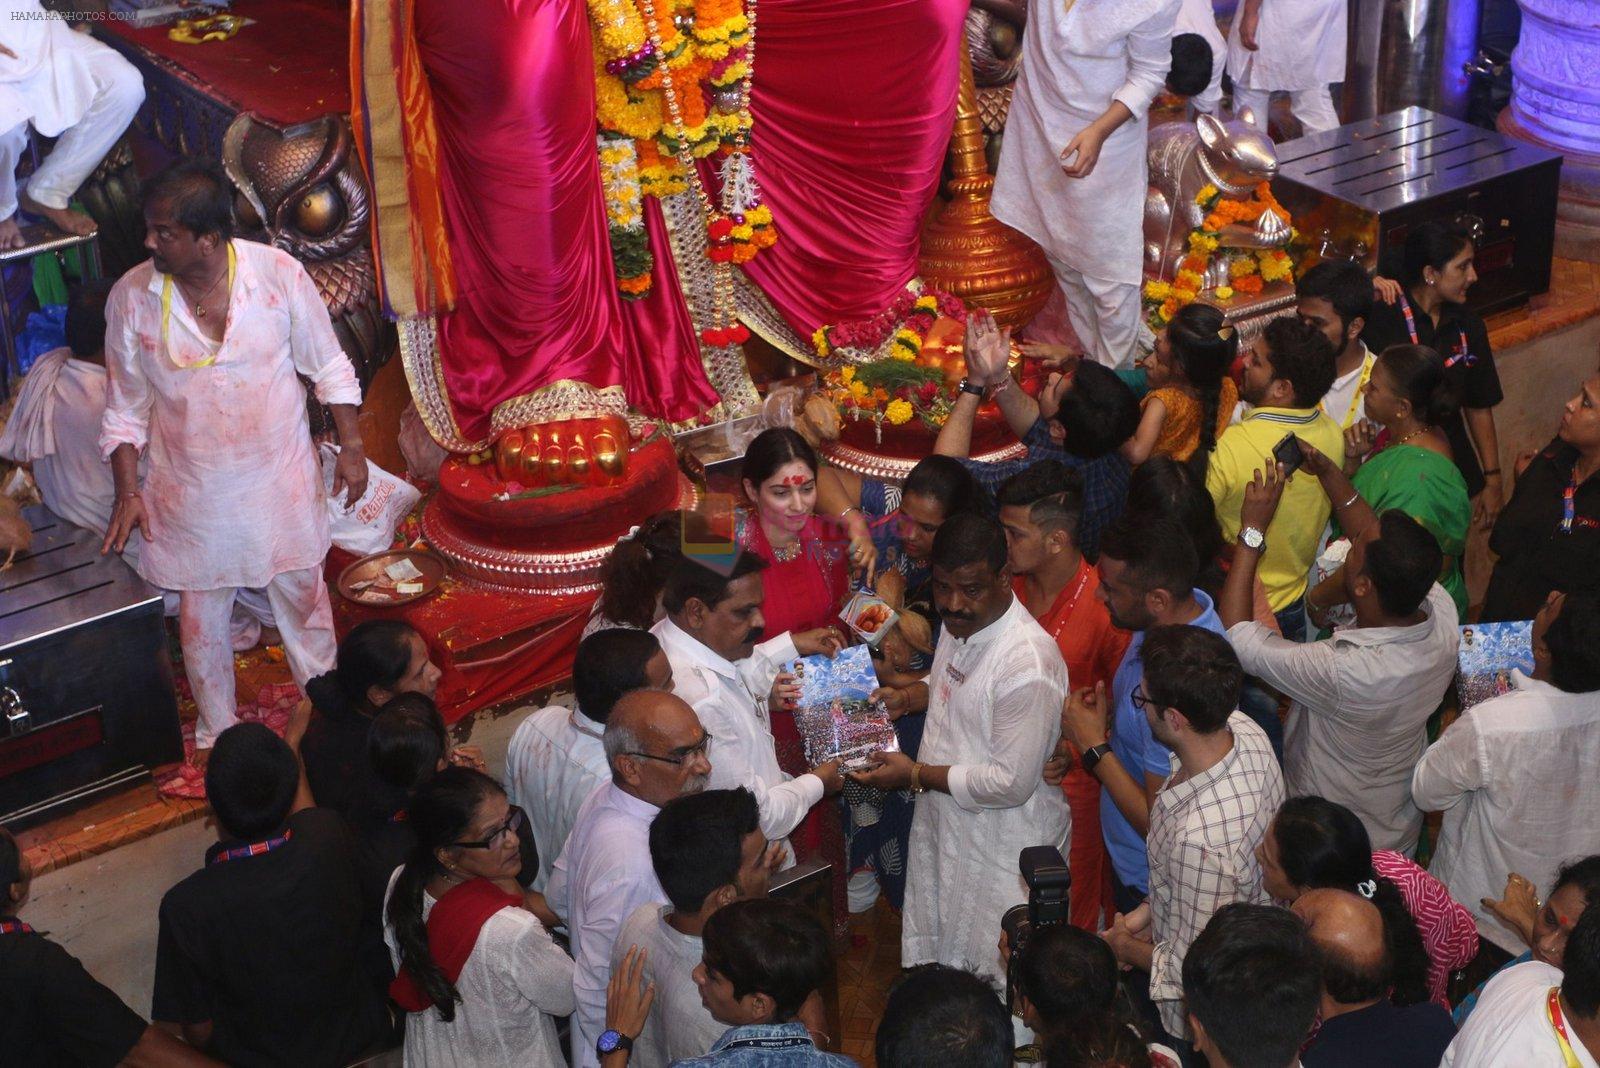 Tammanah Bhatia at Lalbaugcha Raja on 11th Sept 2016